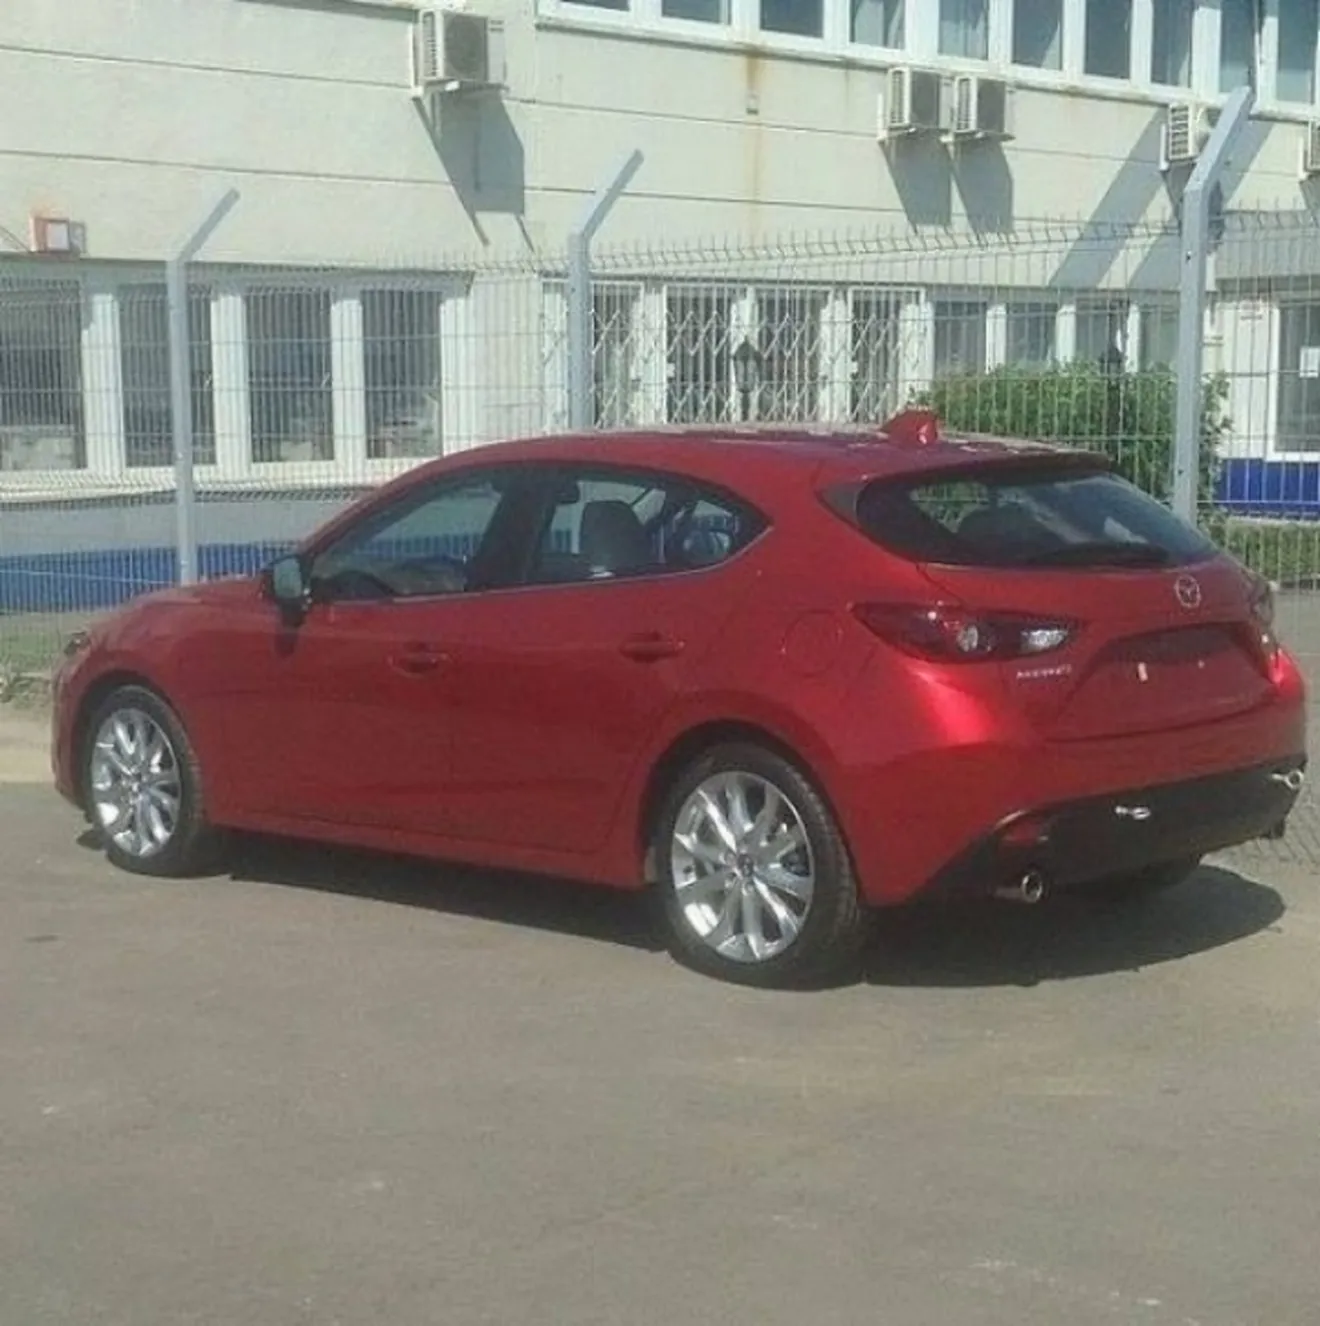 Mazda 3 2014, al natural y sin camuflaje